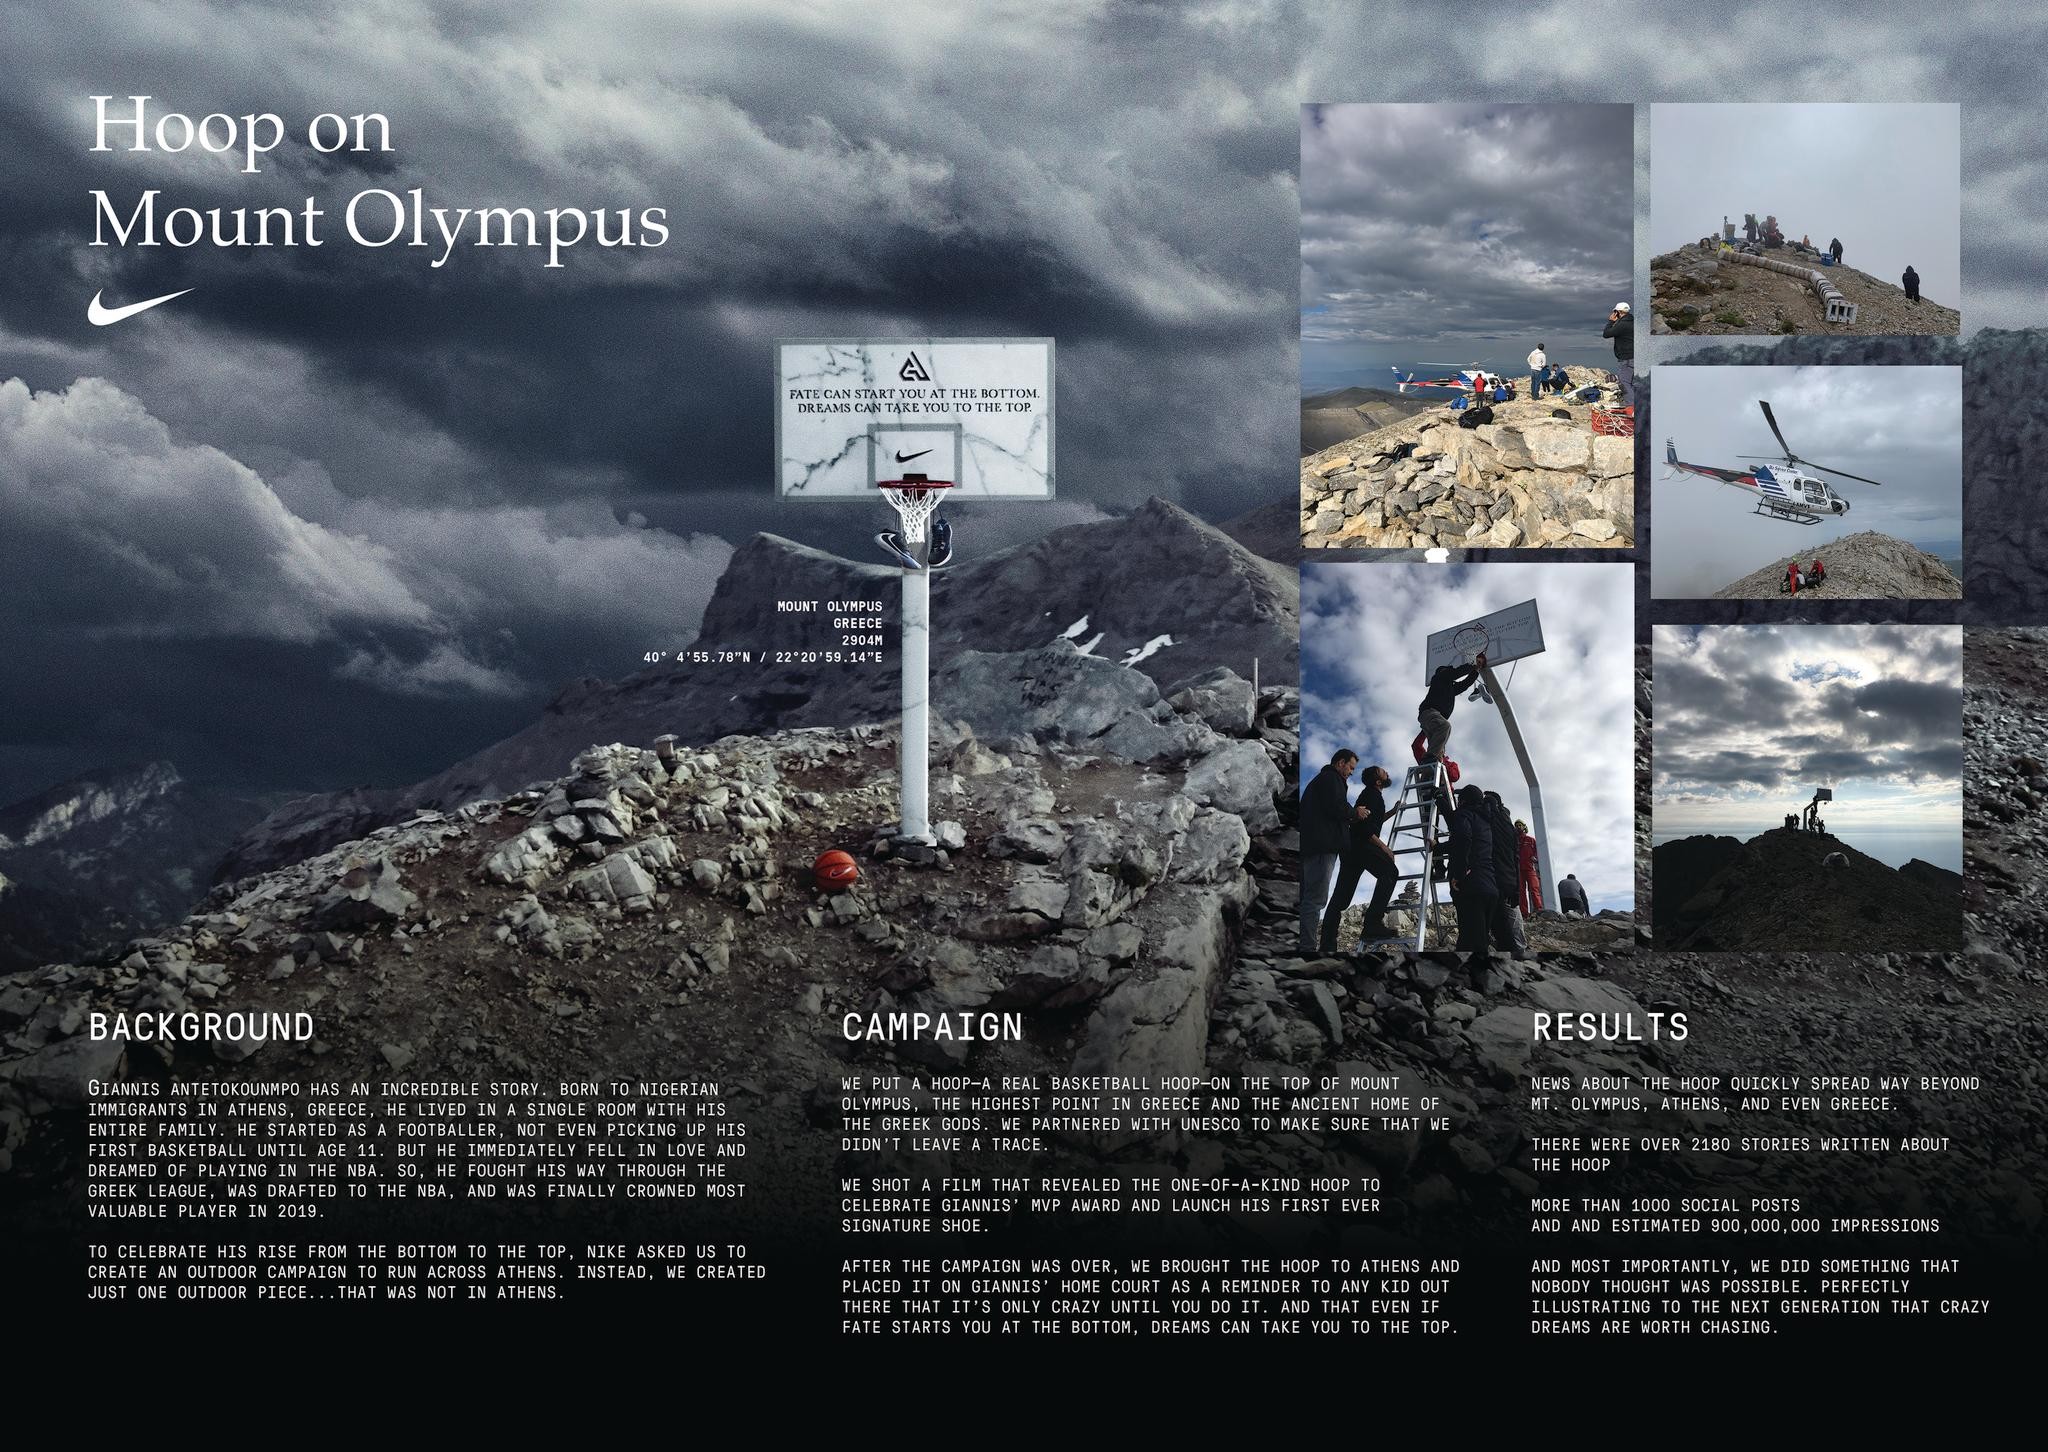 Hoop on Mount Olympus